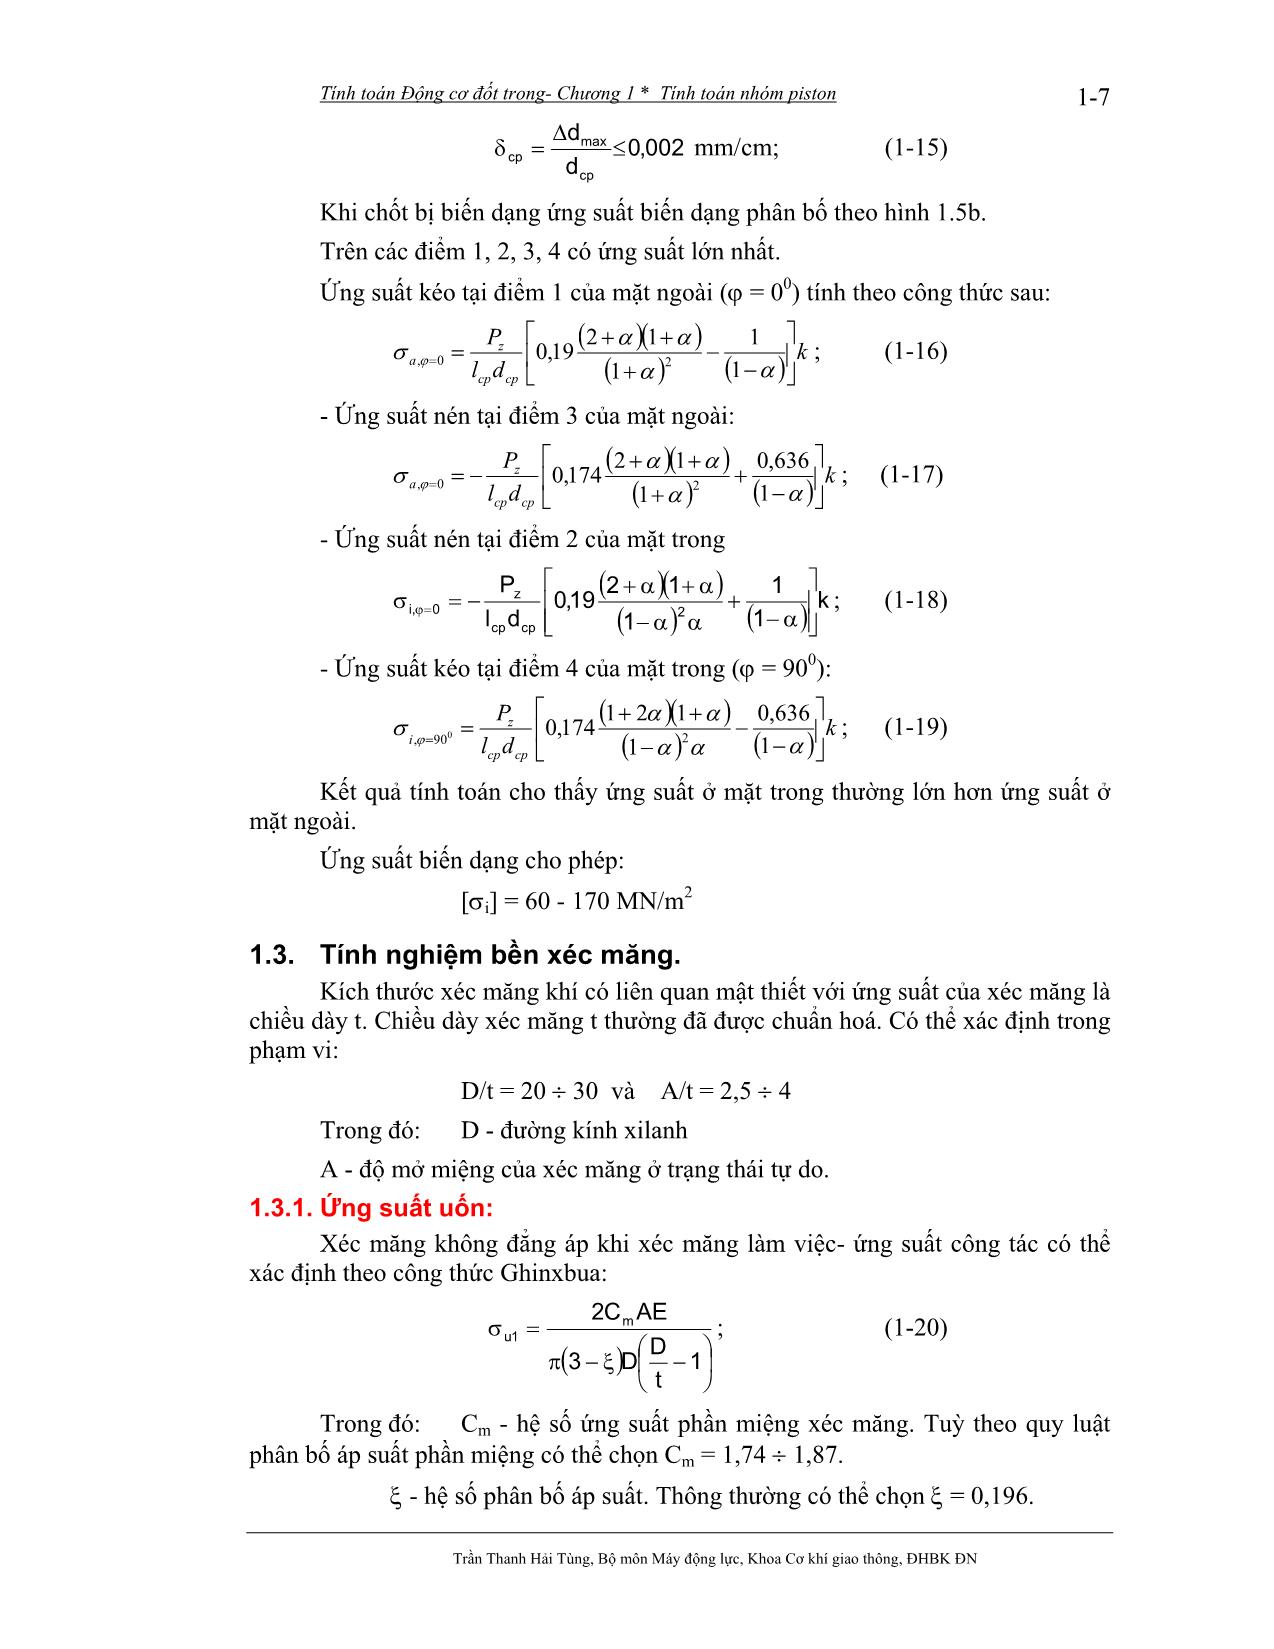 Bài giảng Tính toán thiết kế động cơ đốt trong - Trần Thanh Hải Tùng trang 8